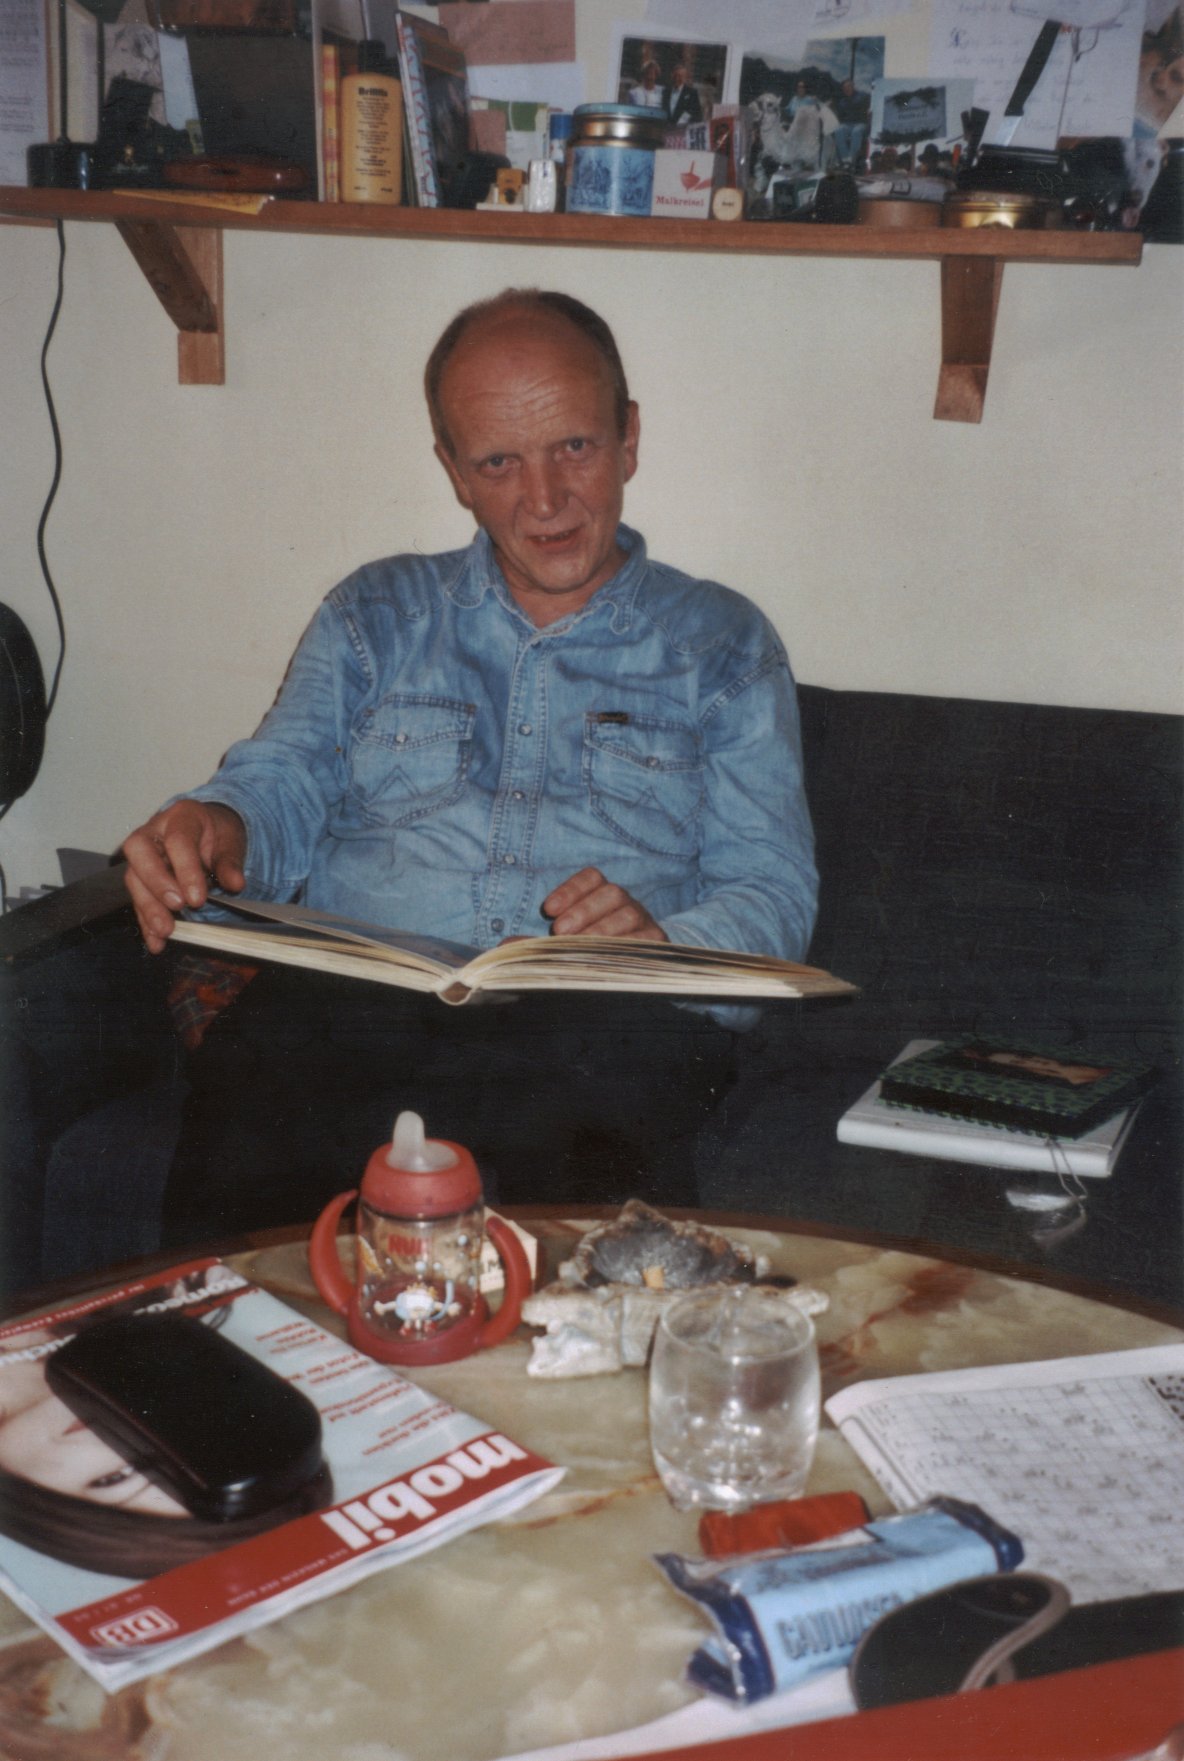 Photo: Erwin Thomasius beim Betrachten eines Photoalbums in einer Mietwohnung in Traunstein in Oberbayern im Juli 2006. Photograph: Ralf Splettstößer.